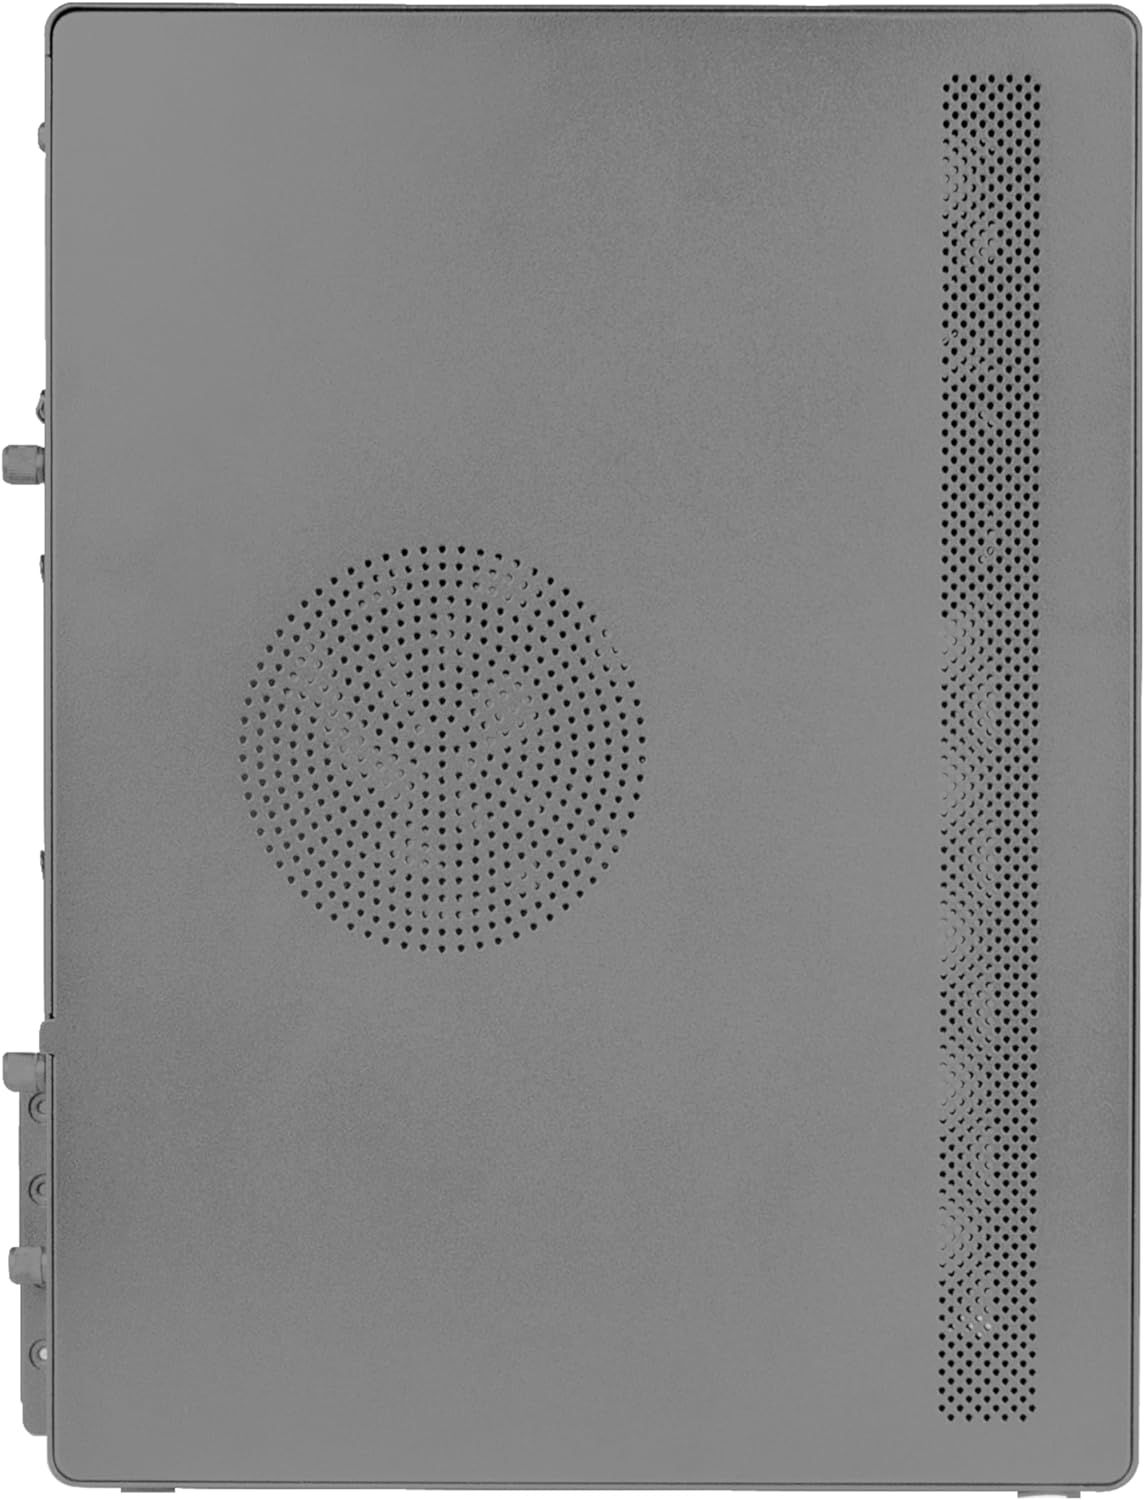 2NOVAX550BR - Caja Tacens 550W 1xUSB 2.0 1xUSB 3.0 mATX Mini-ITX Acero Negra (2NOVAX550BR)